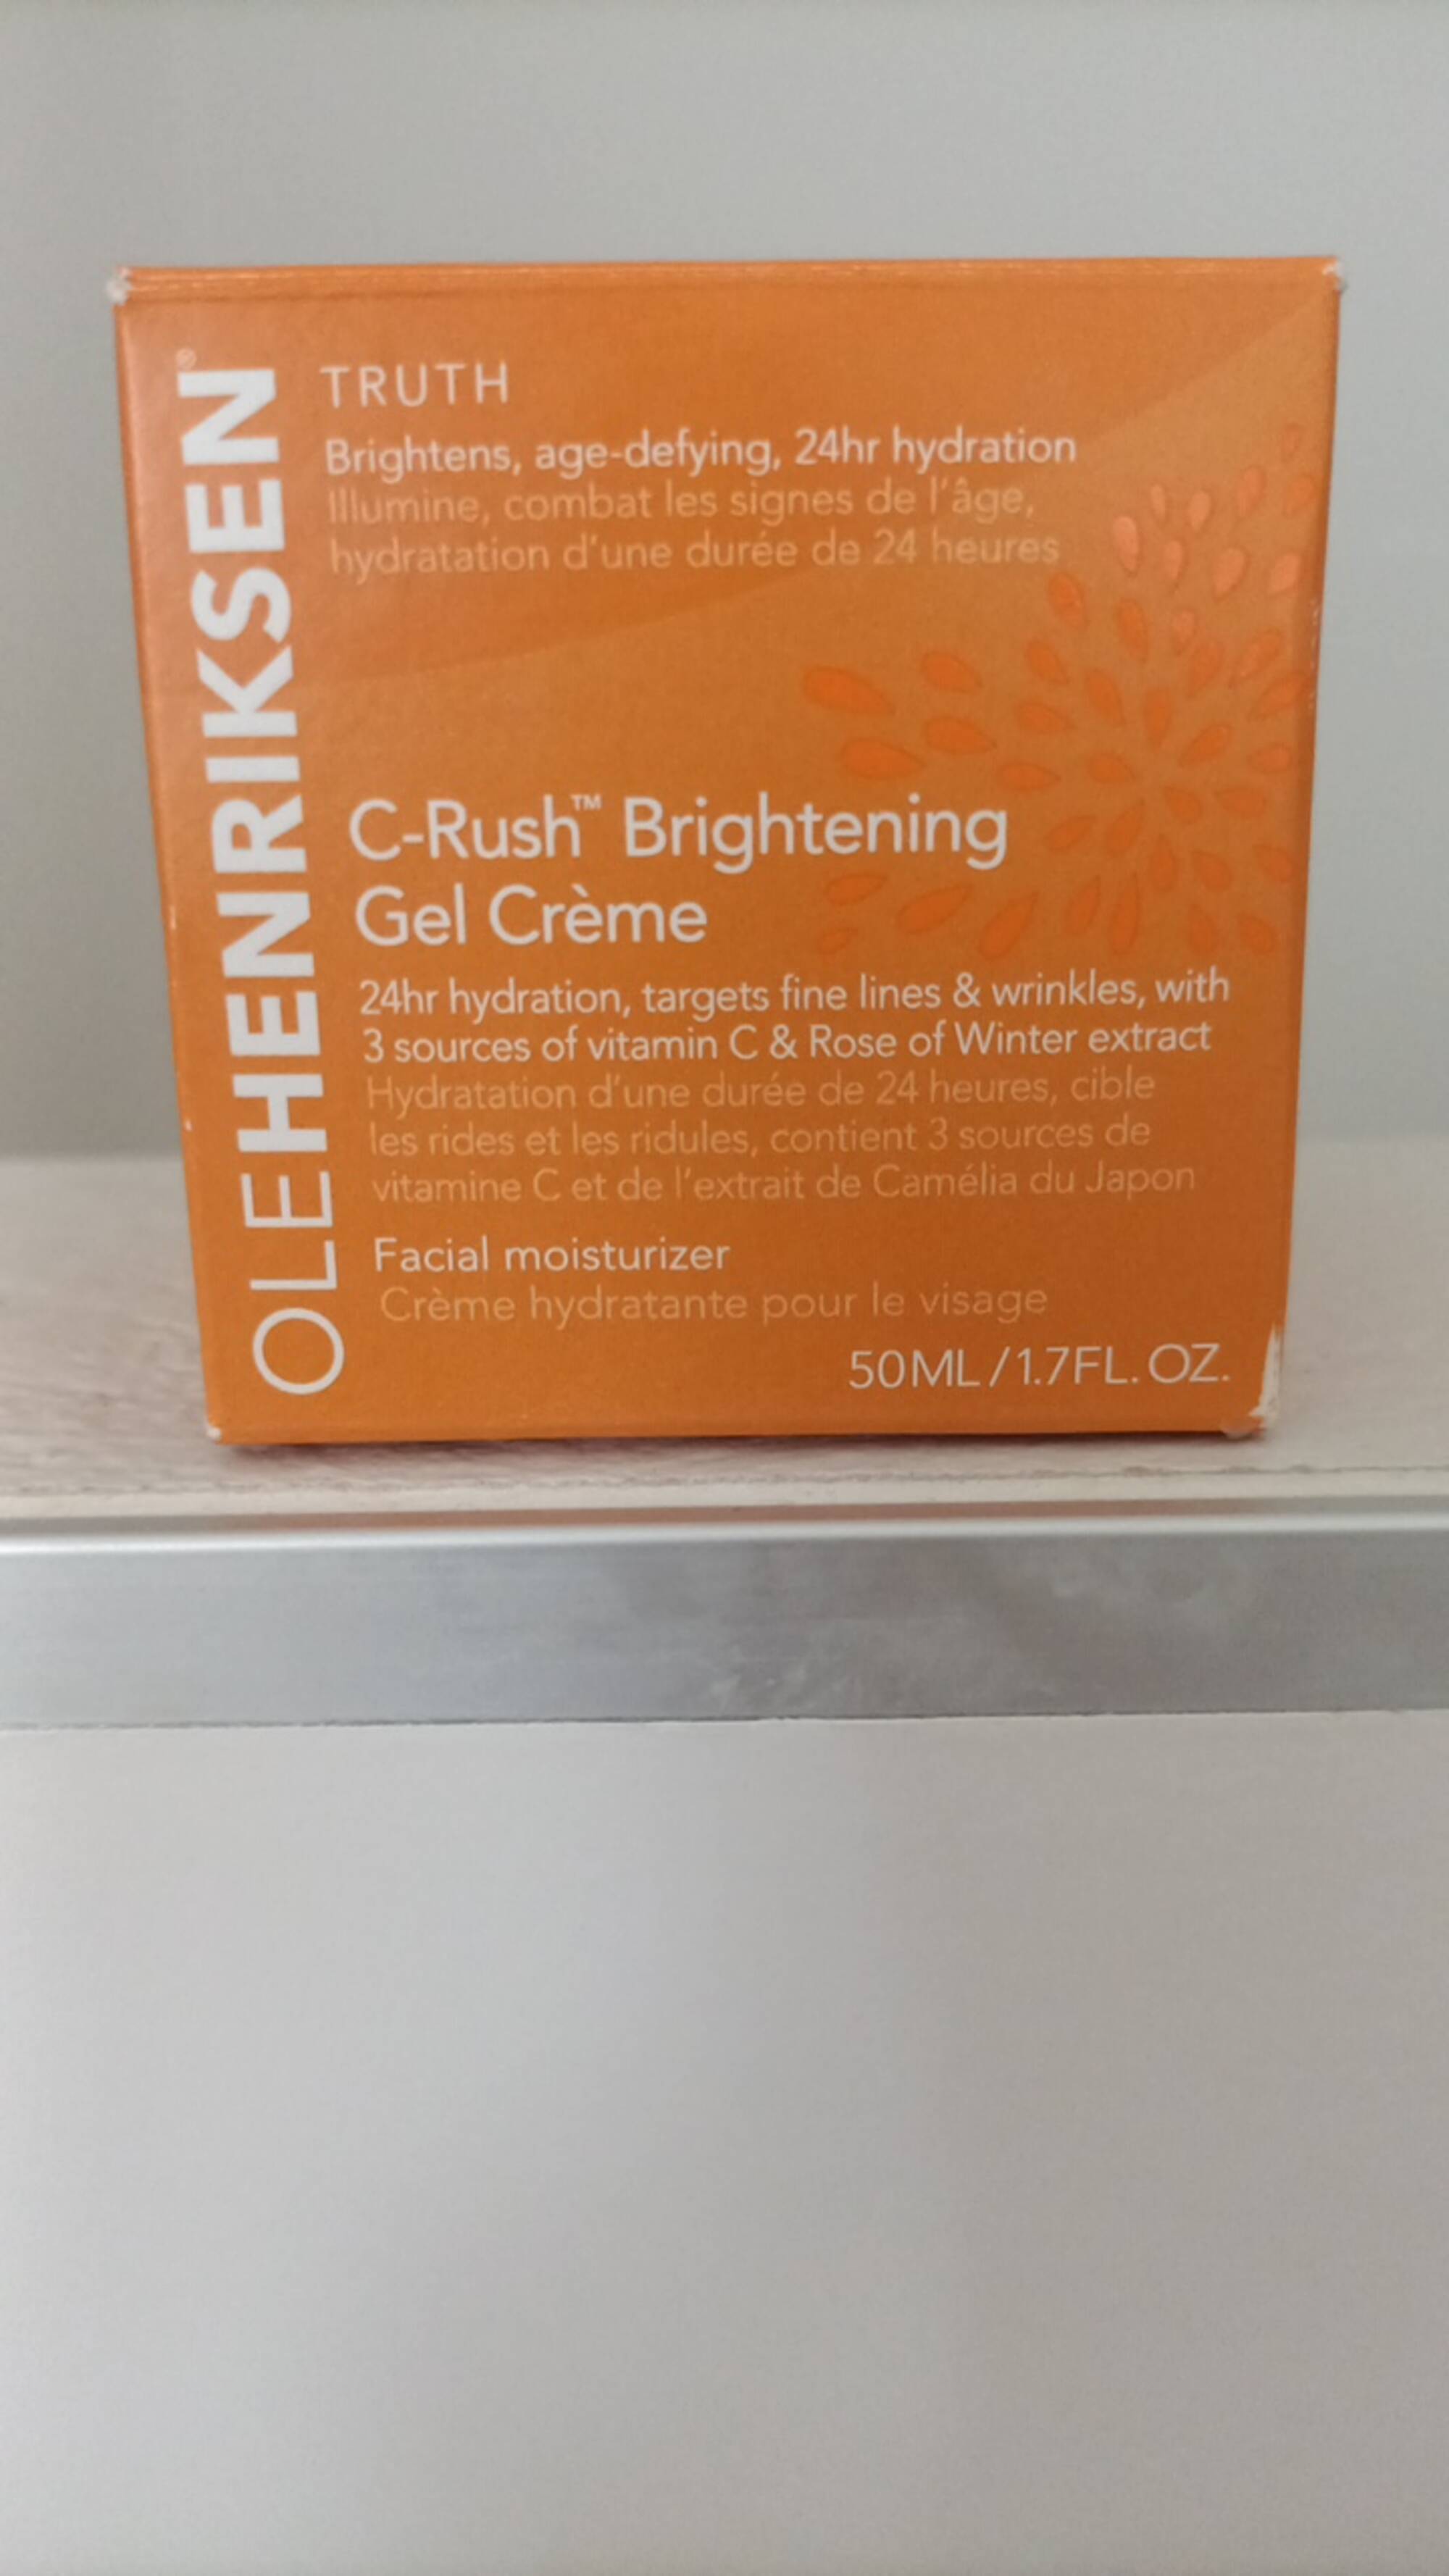 OLE HENRIKSEN - C-rush brightening - Crème hydratante pour le visage